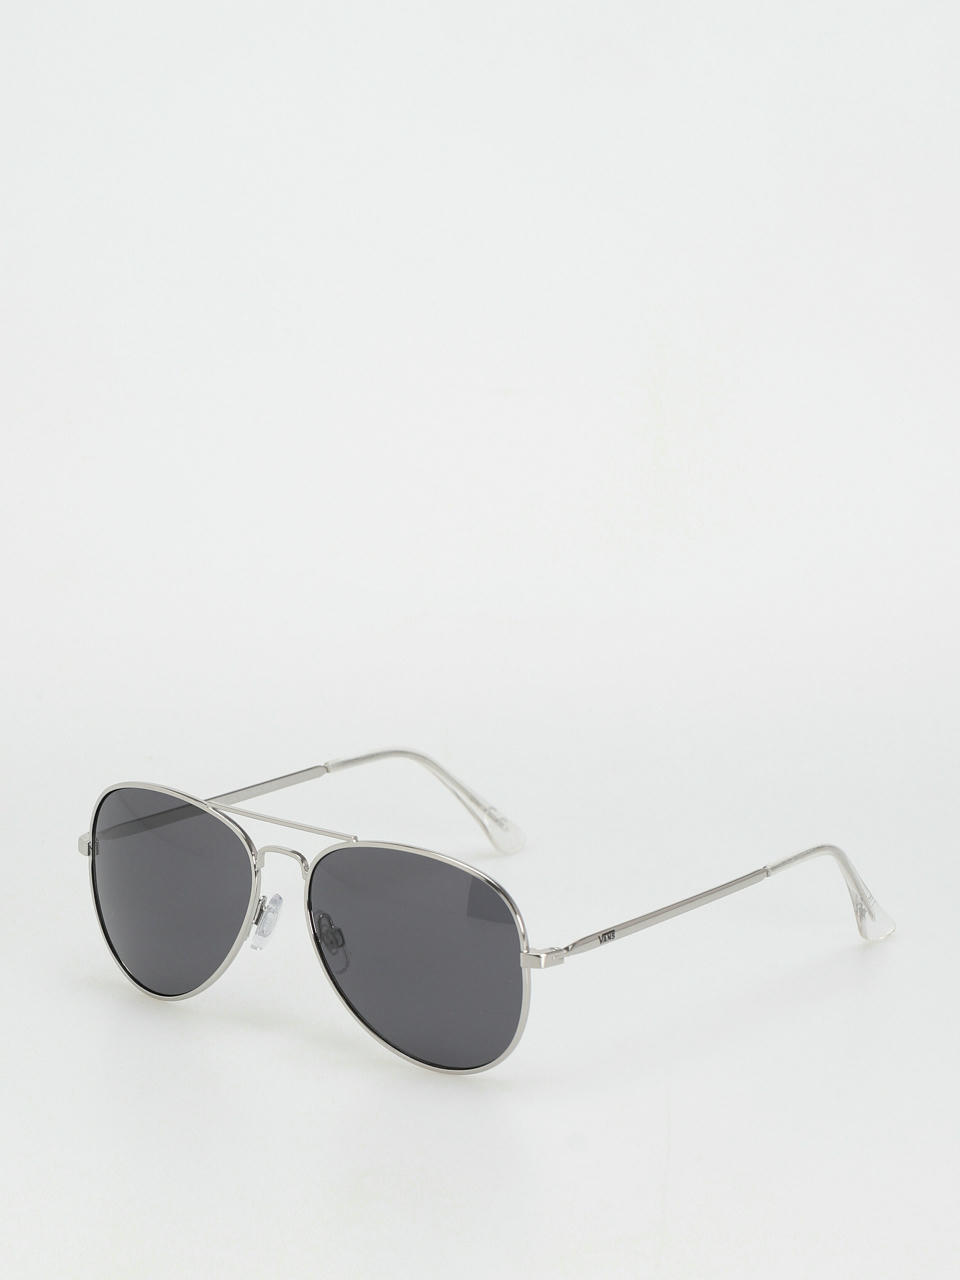 Sunglasses Henderson Vans (silver) II